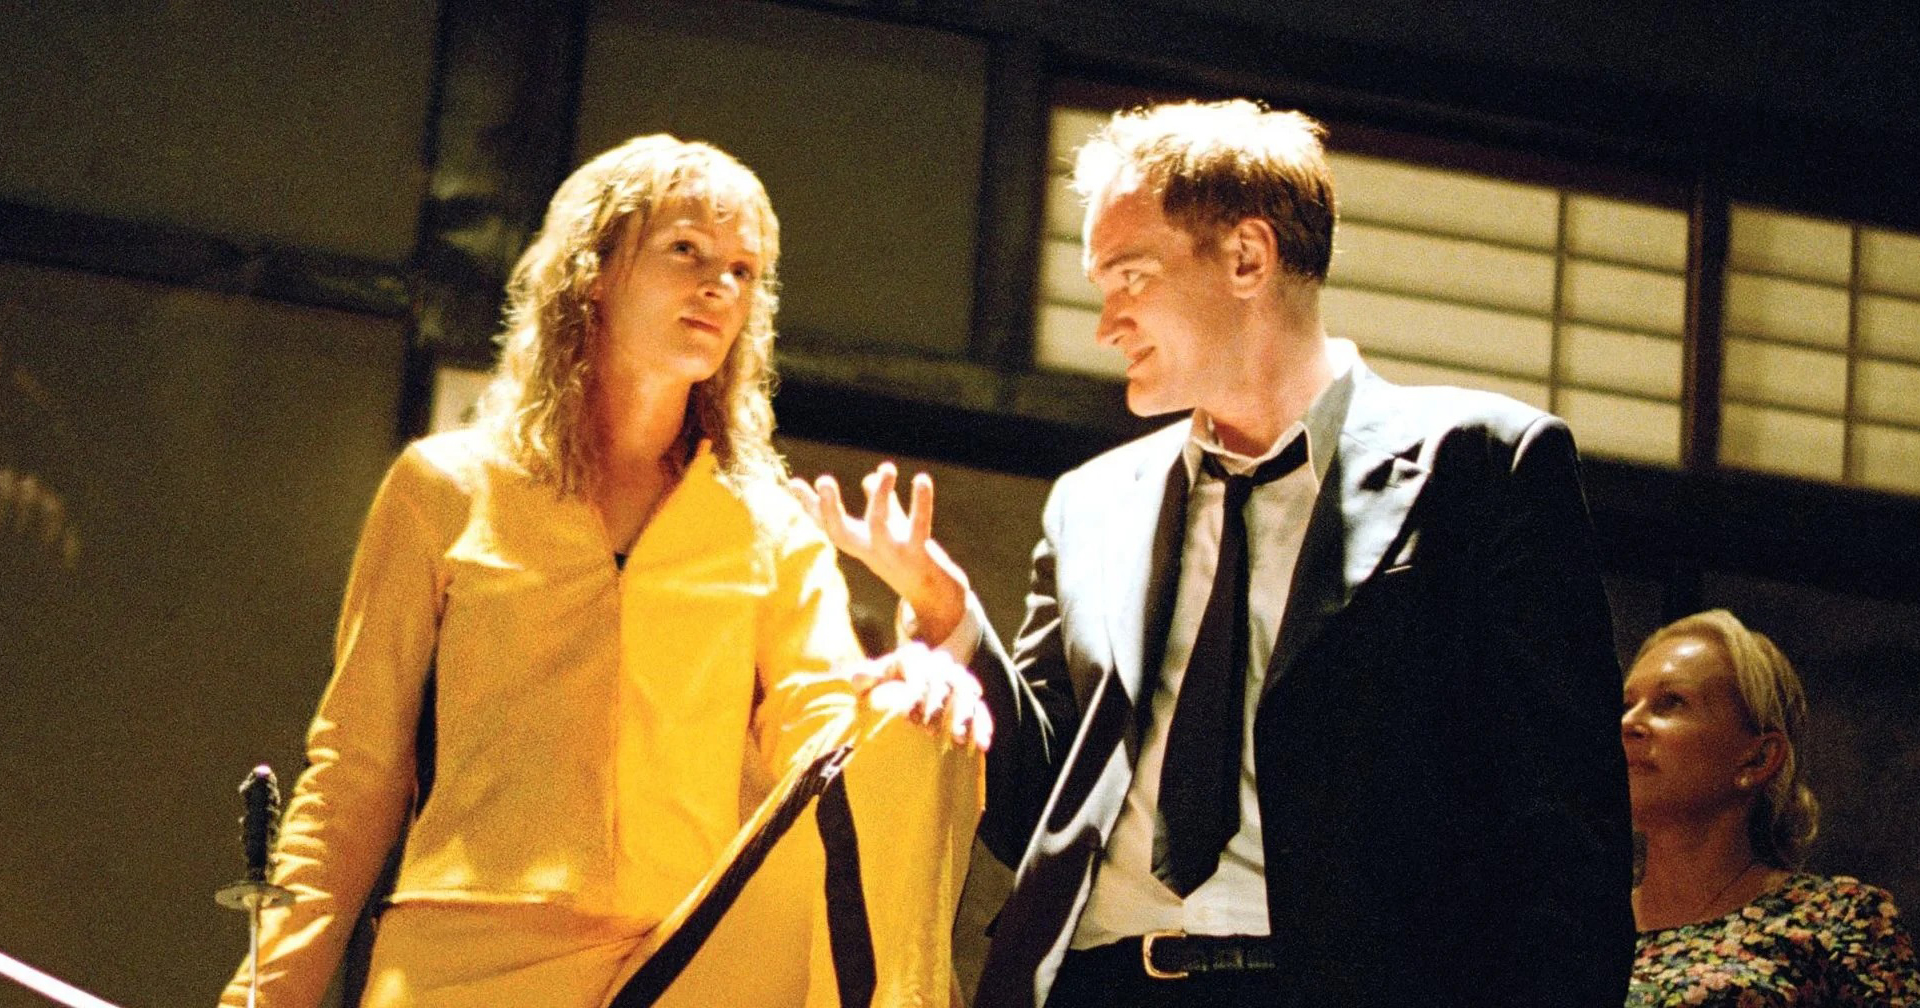 Quentin Tarantino กล่าว “อาจไปกำกับซีรีส์” หลังกำกับภาพยนตร์เรื่องสุดท้ายแล้ว